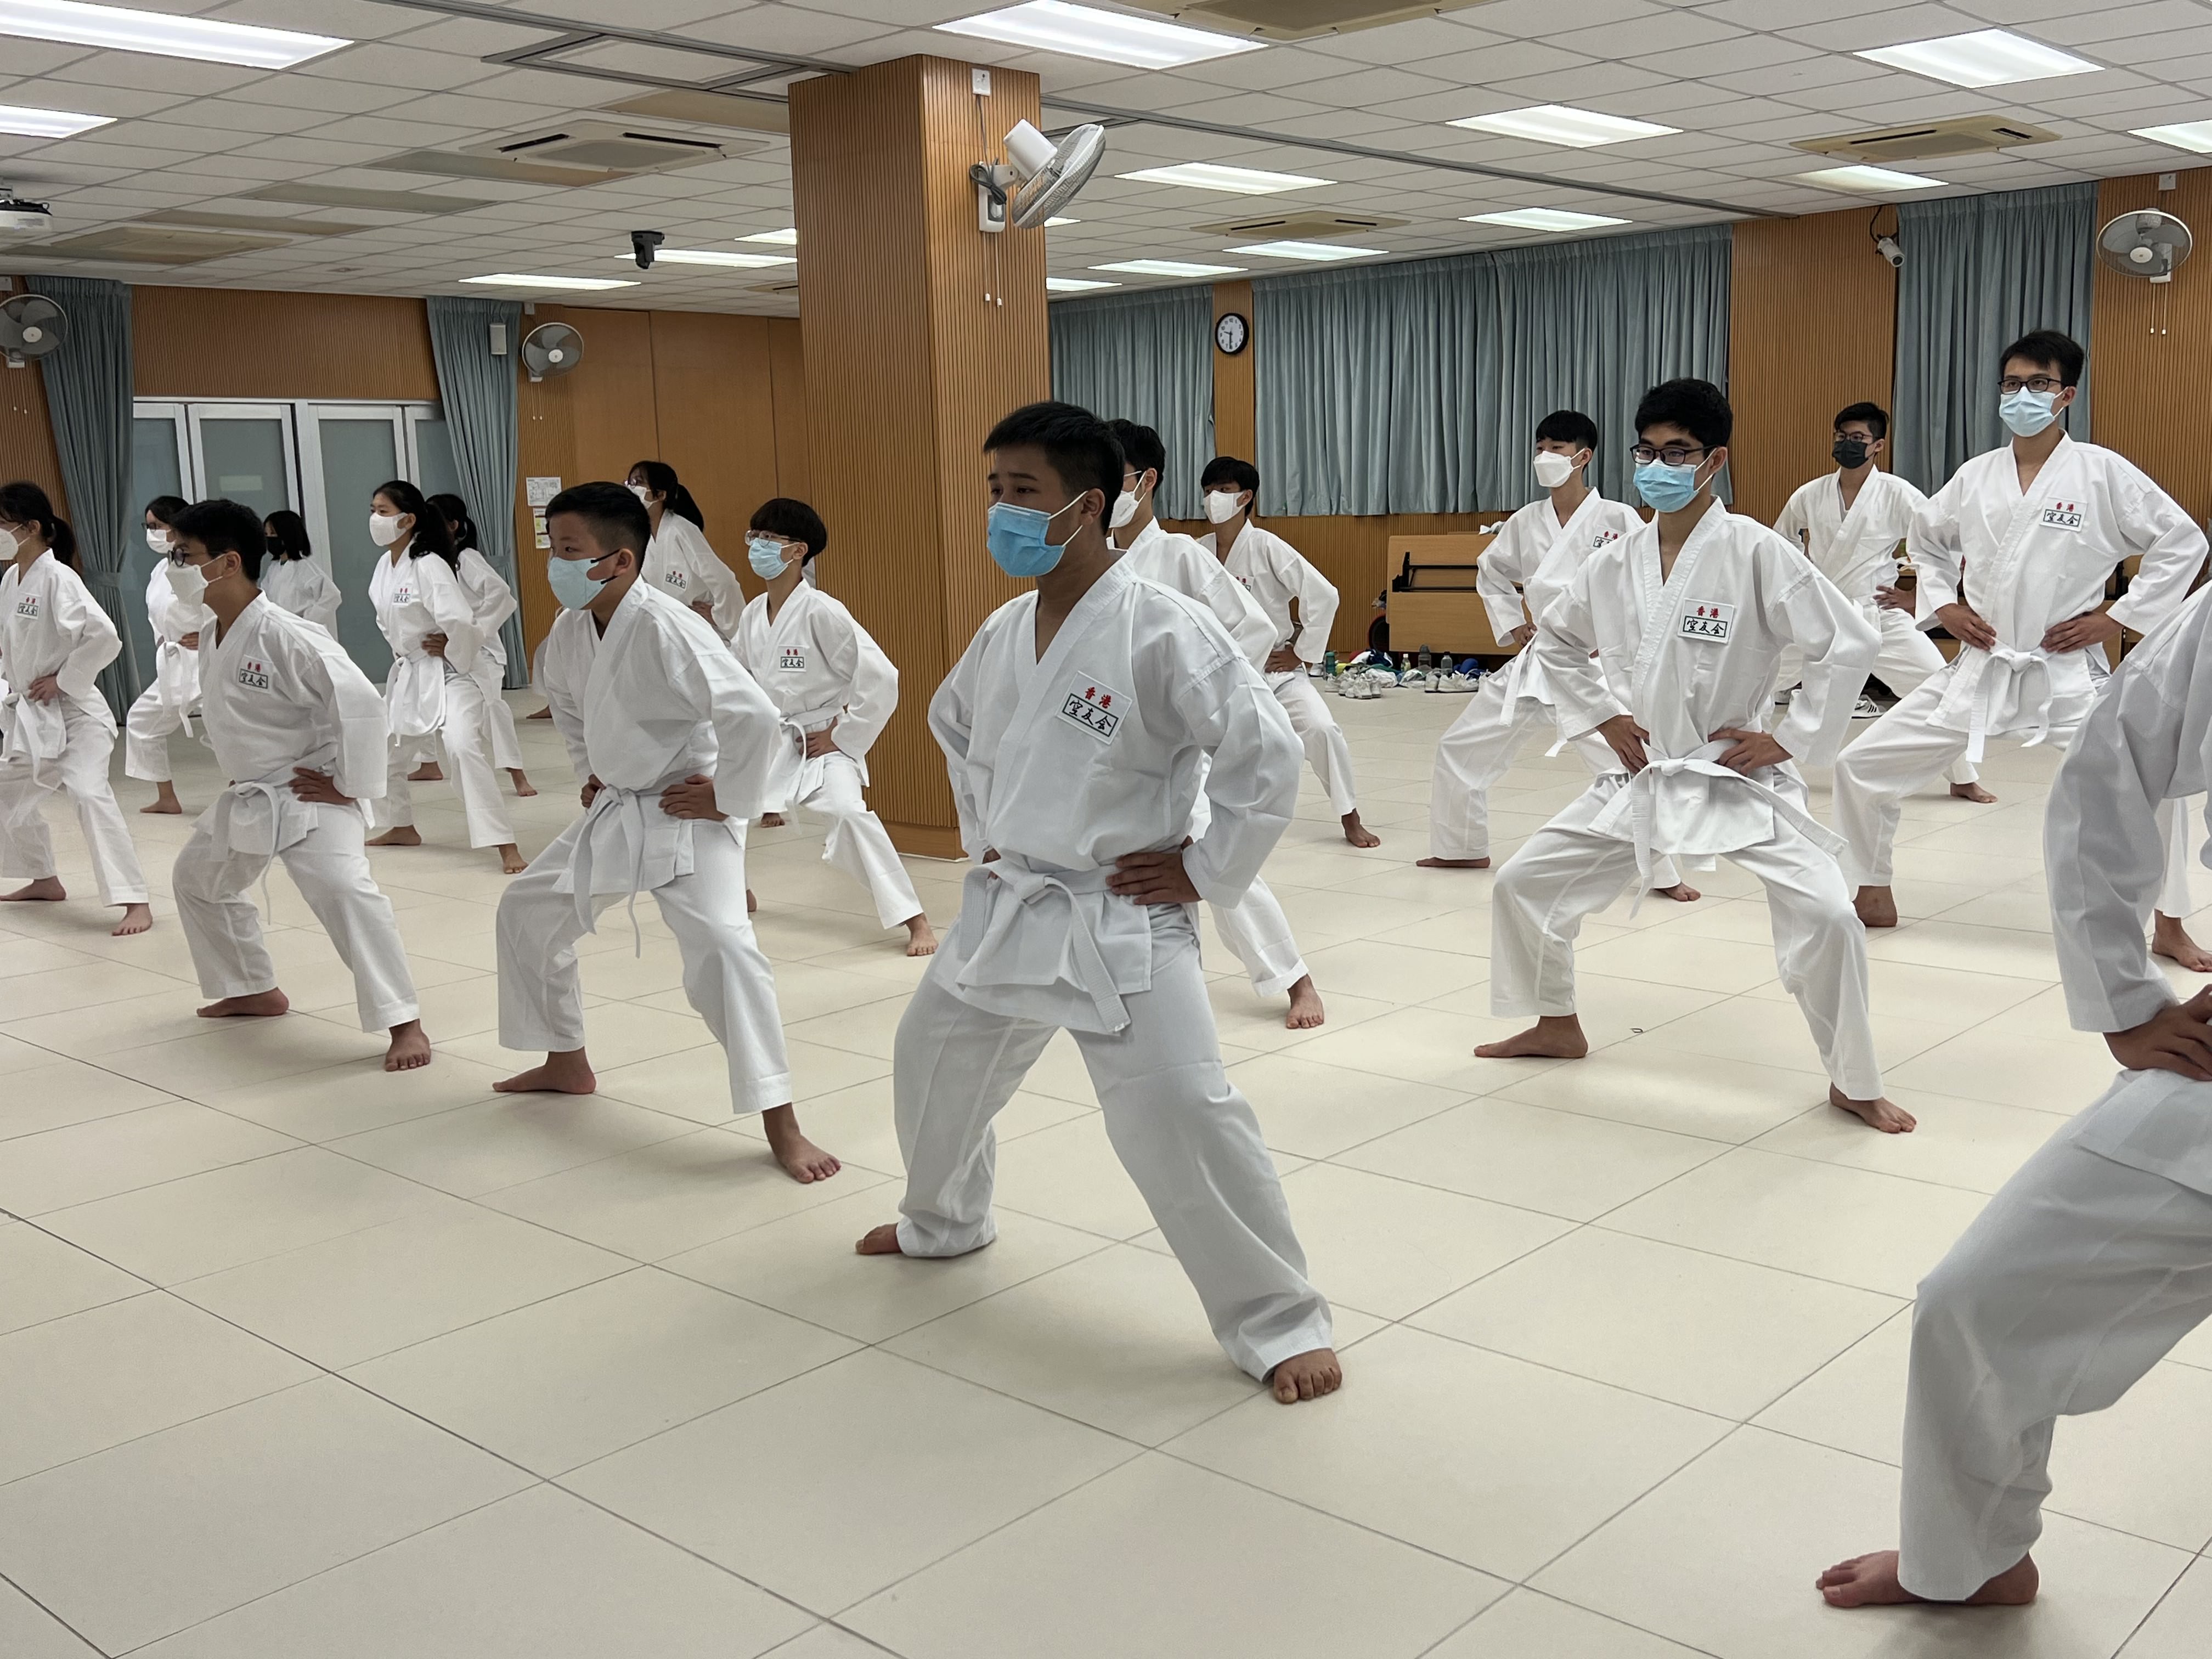 LEWOWA2122-30  Karatedo : Way To Live A Positive Life